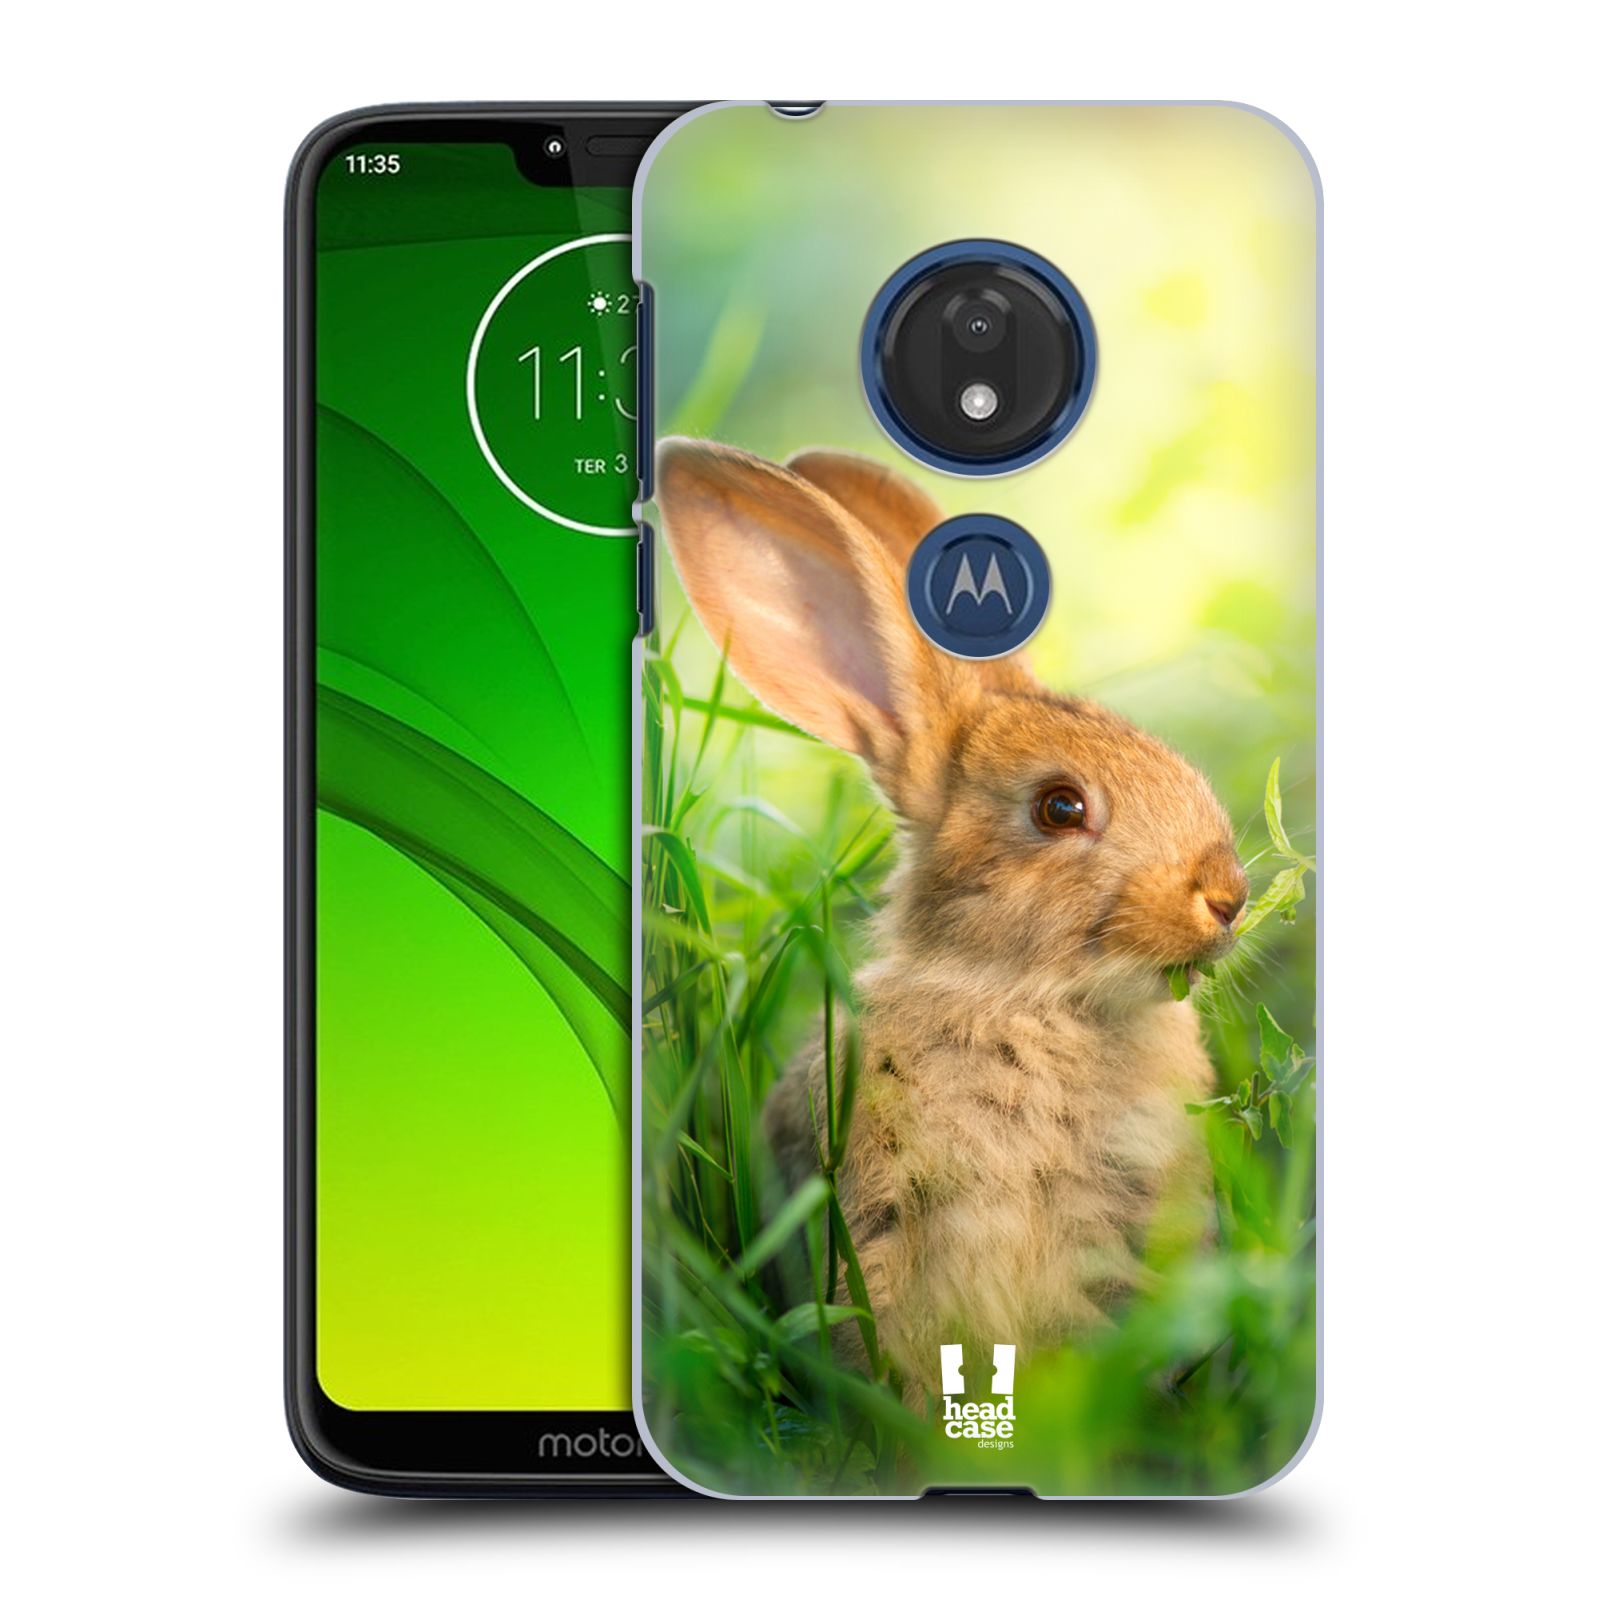 Pouzdro na mobil Motorola Moto G7 Play vzor Divočina, Divoký život a zvířata foto ZAJÍČEK V TRÁVĚ ZELENÁ